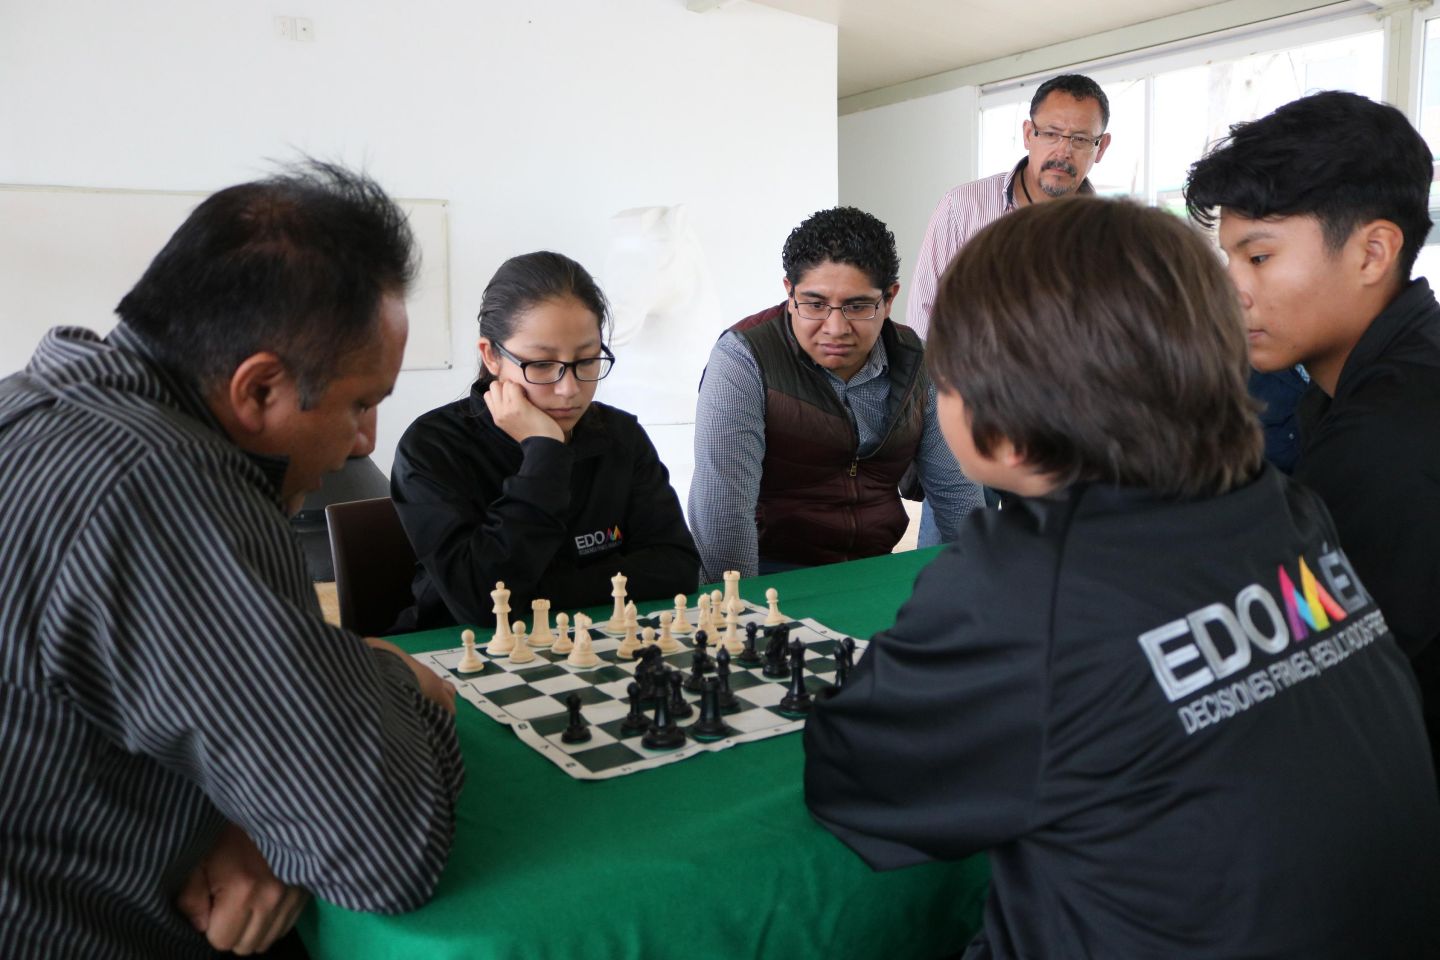 Inician aprendizaje del deporte ciencia en escuela de ajedrez ubicada el en centro cultural mexiquense bicentenario 